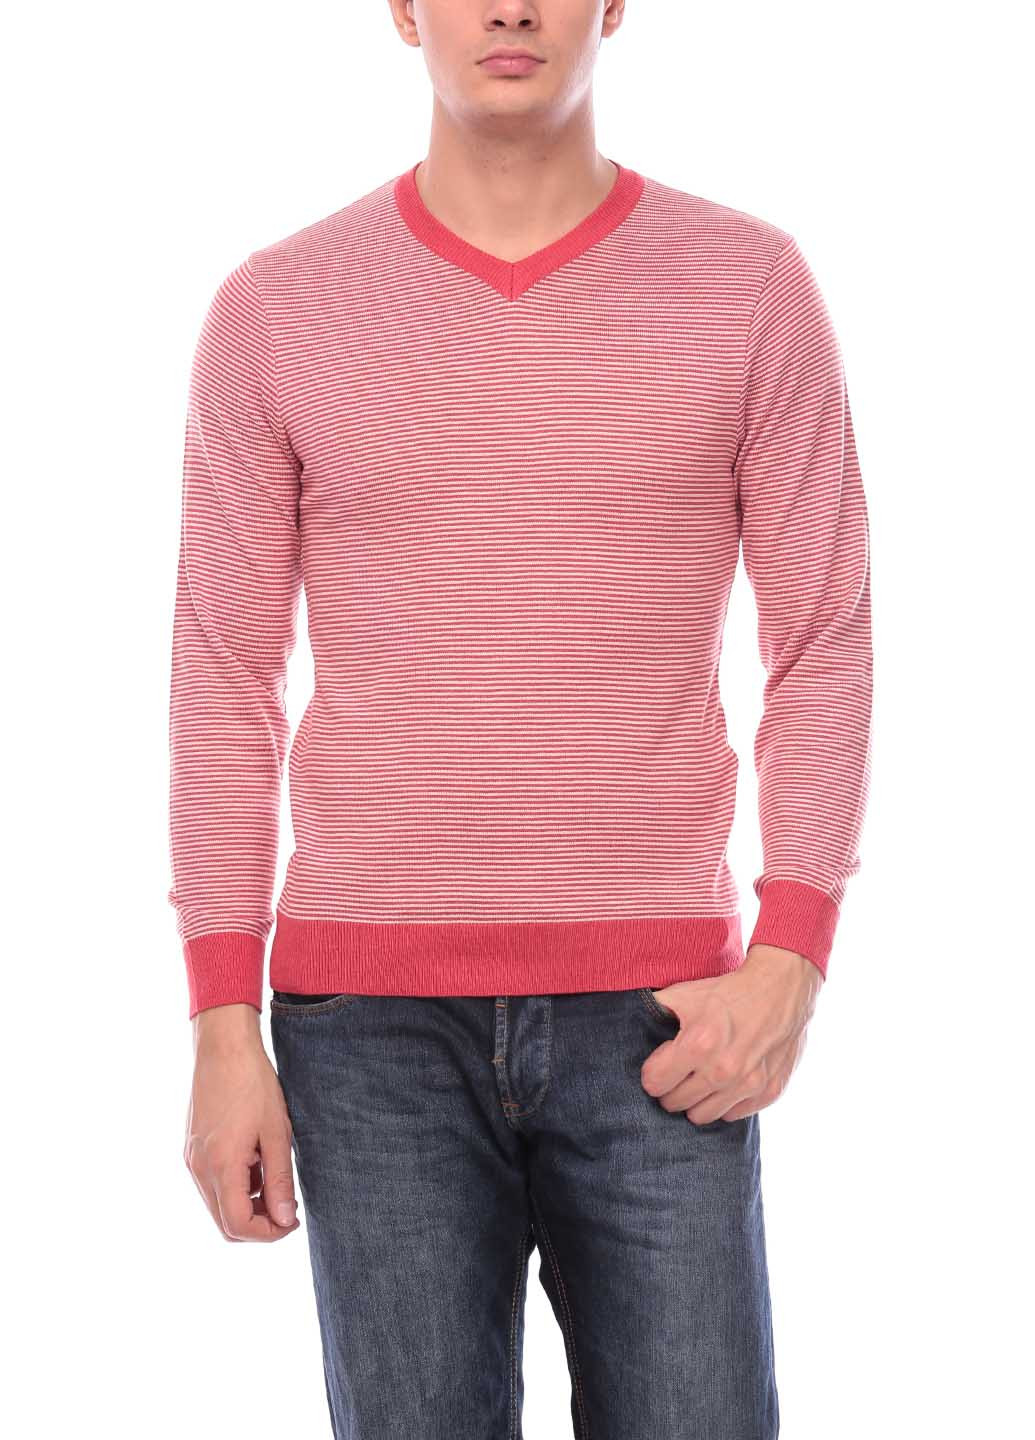 Коралловый демисезонный пуловер пуловер Flash